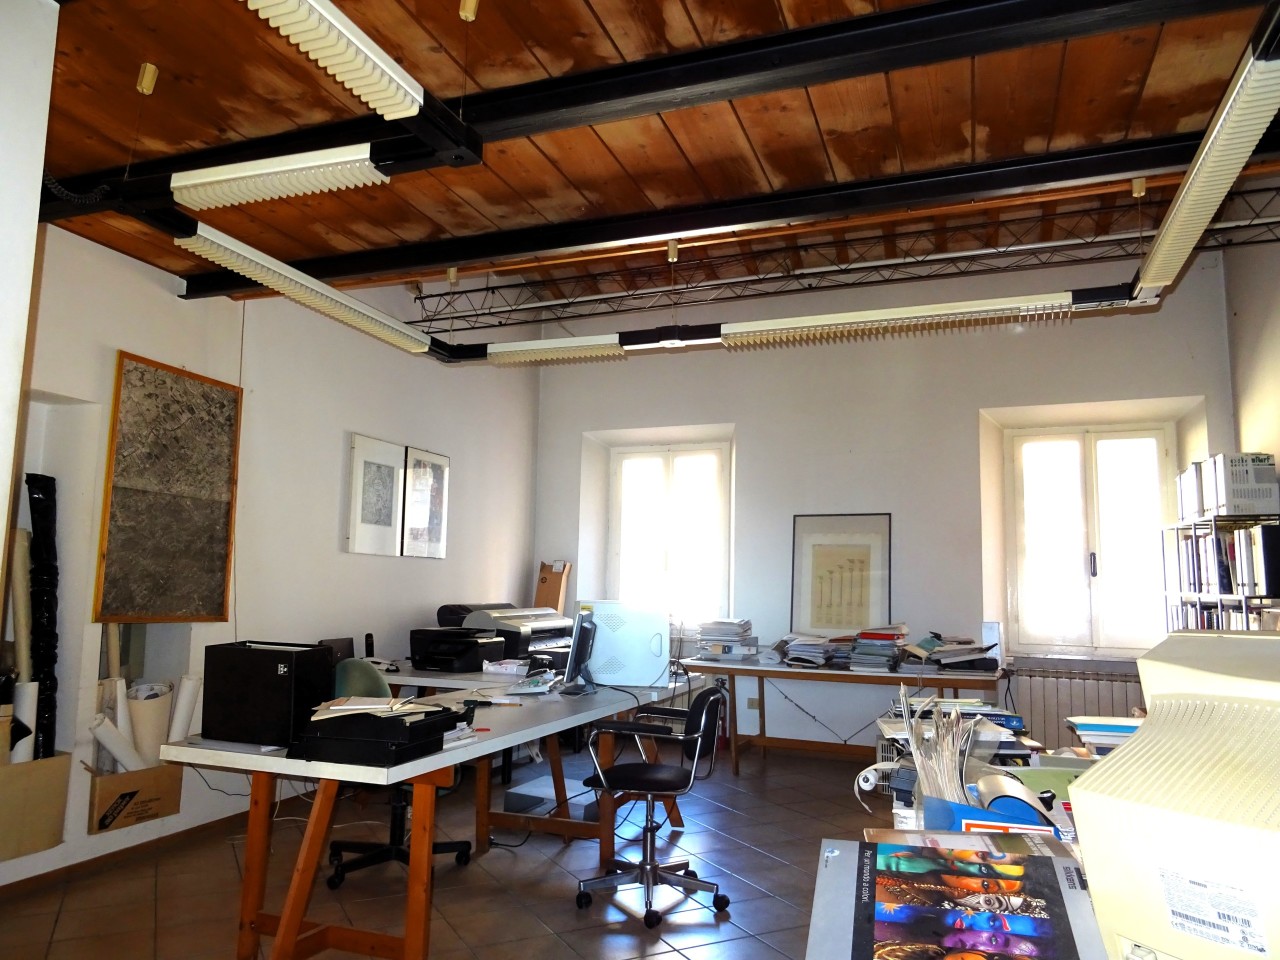 Ufficio / Studio in vendita a Corinaldo, 5 locali, prezzo € 140.000 | PortaleAgenzieImmobiliari.it